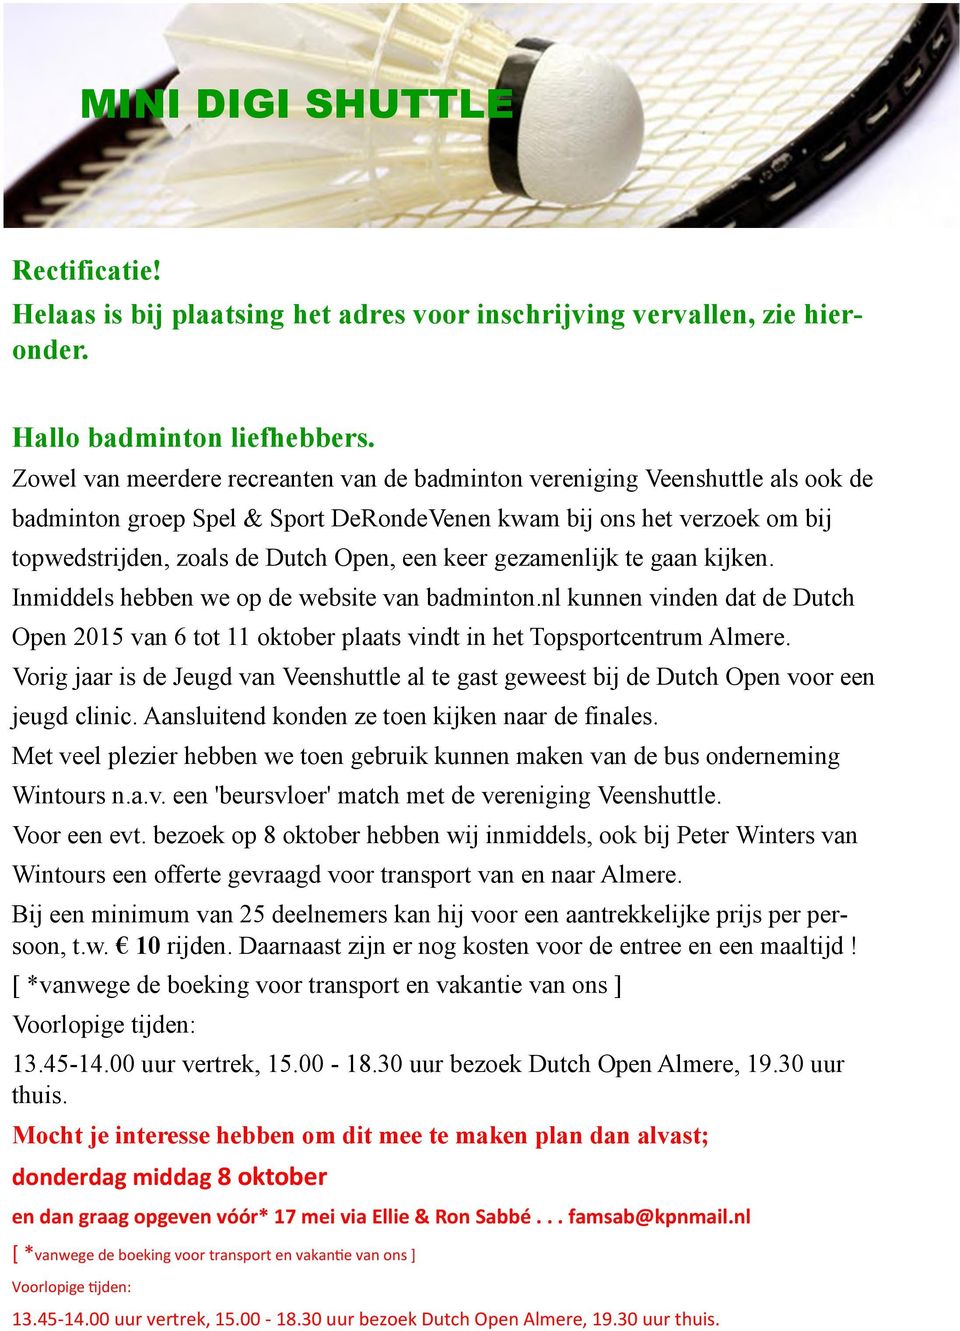 keer gezamenlijk te gaan kijken. Inmiddels hebben we op de website van badminton.nl kunnen vinden dat de Dutch Open 2015 van 6 tot 11 oktober plaats vindt in het Topsportcentrum Almere.